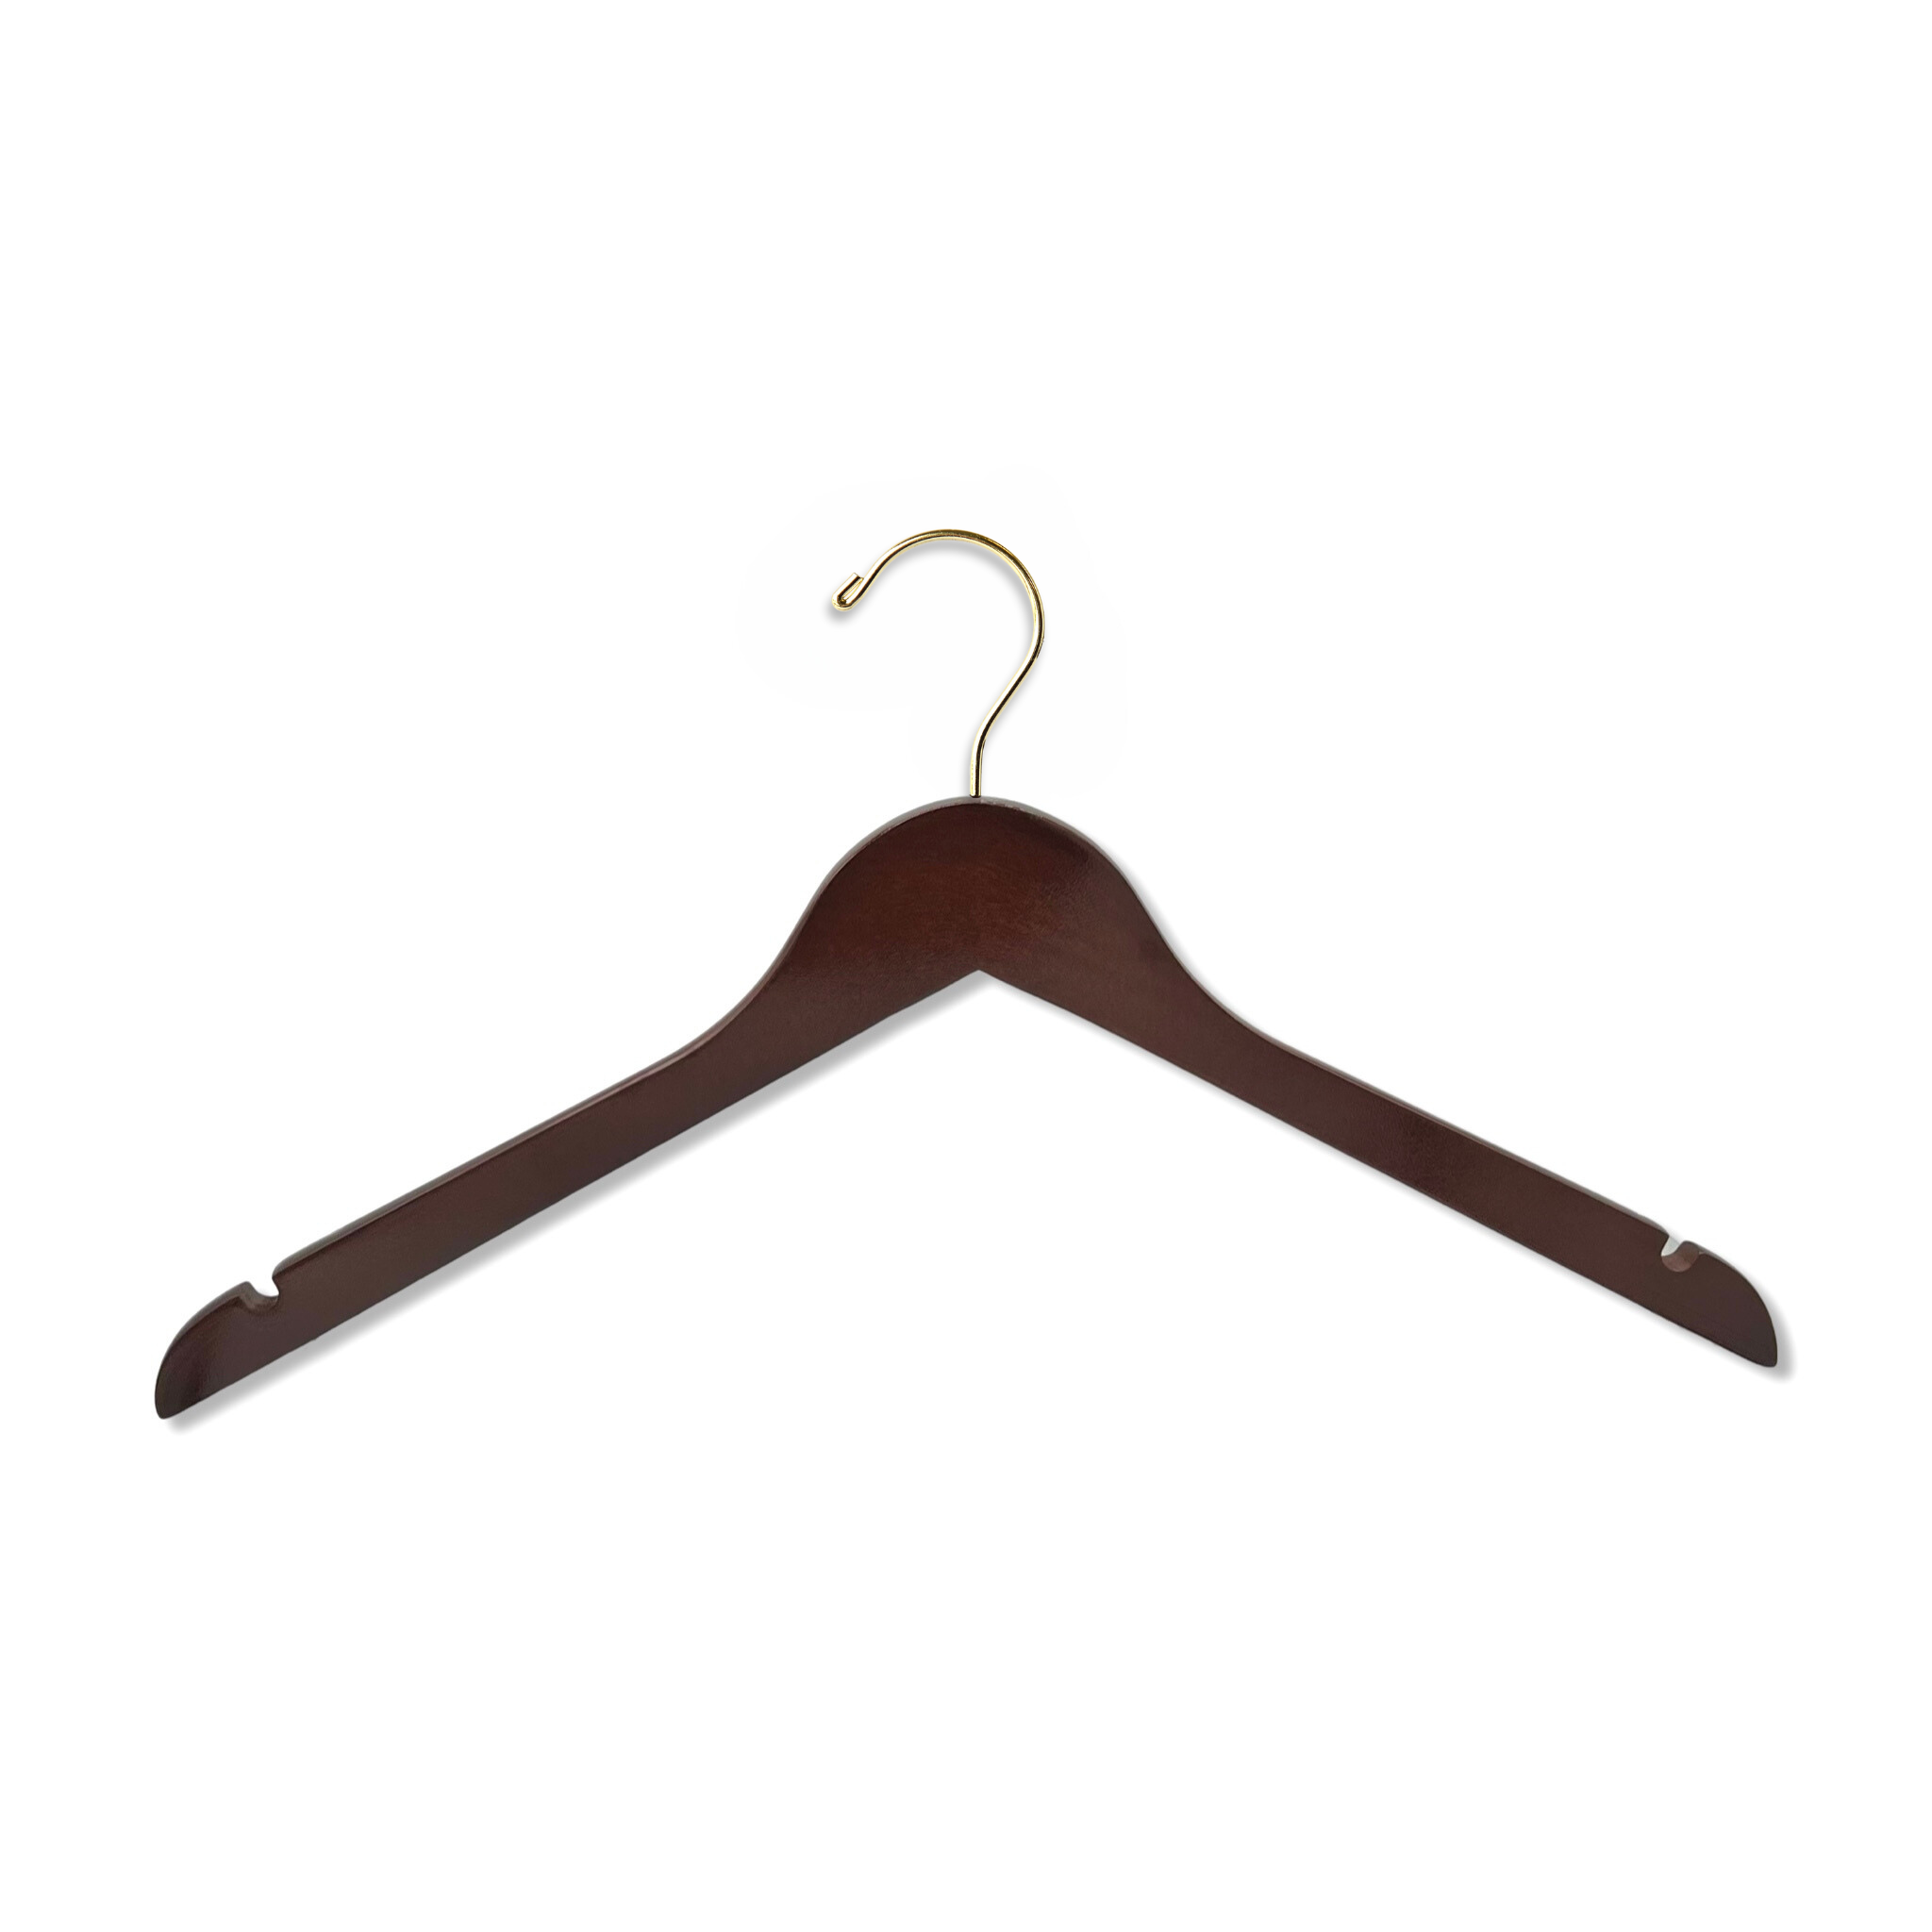 Dark Walnut Wooden Adult Top Hanger with shoulder notches and a gold hook for custom hanger designers #hook-color_gold-hook